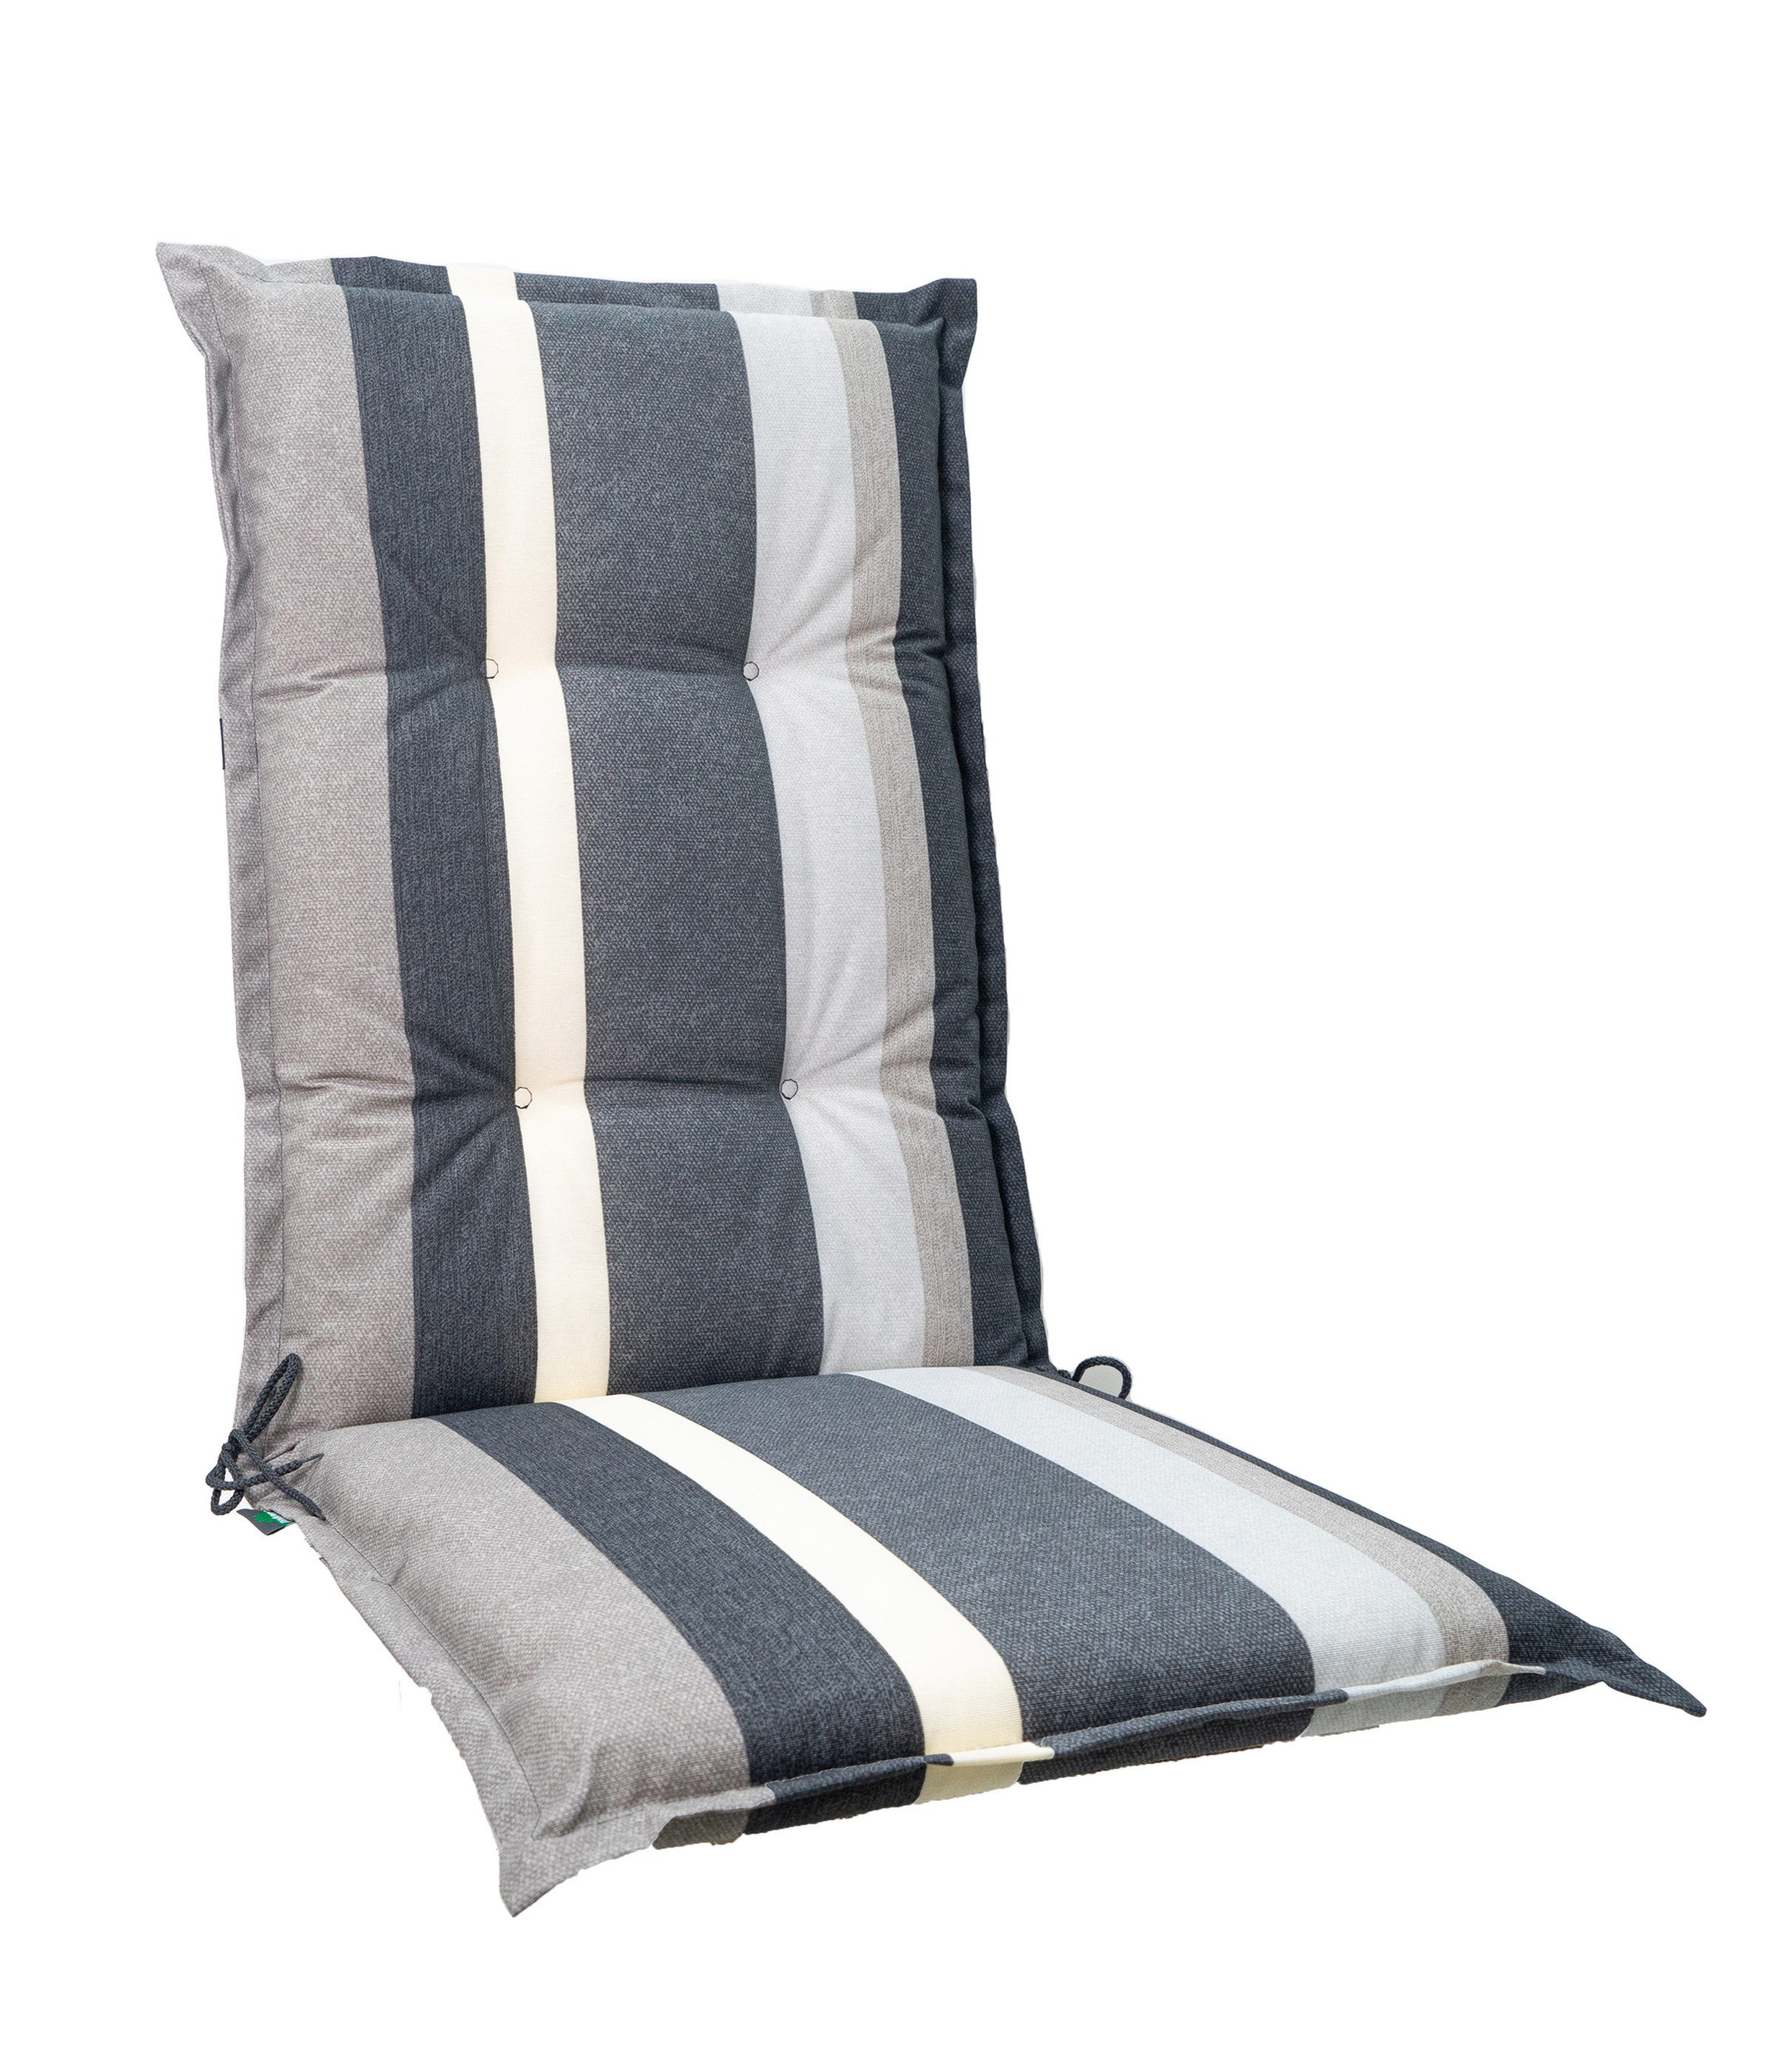 Dehner Polsterauflage Ligura, 71 x 50 x 50 cm, Farbe grau, für Hochlehner-Stühle, komfortable Schaumfüllung, wasserabweisend